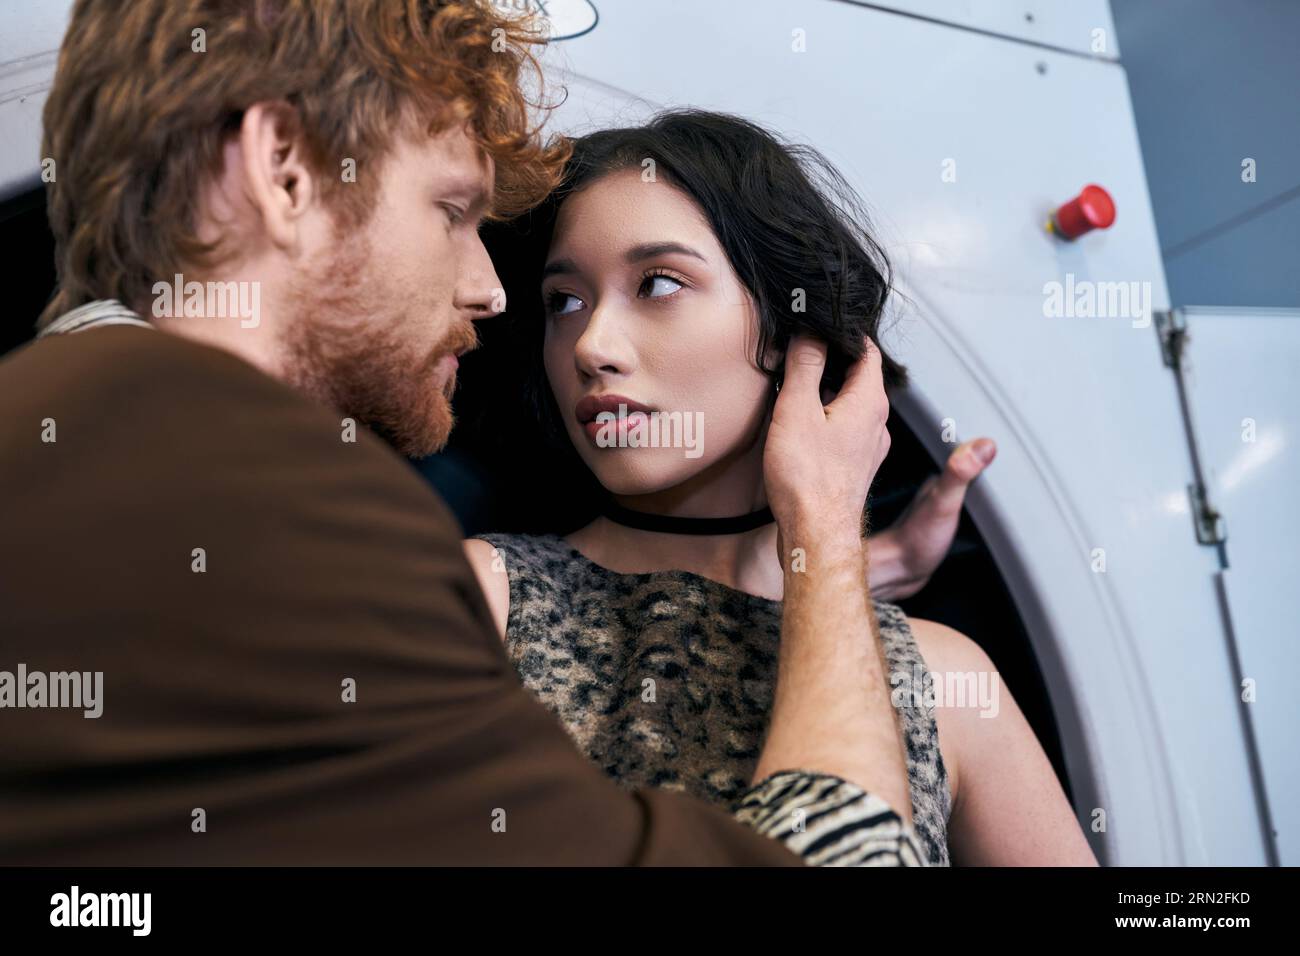 élégant jeune homme rousse touchant brune petite amie asiatique dans la blanchisserie publique Banque D'Images